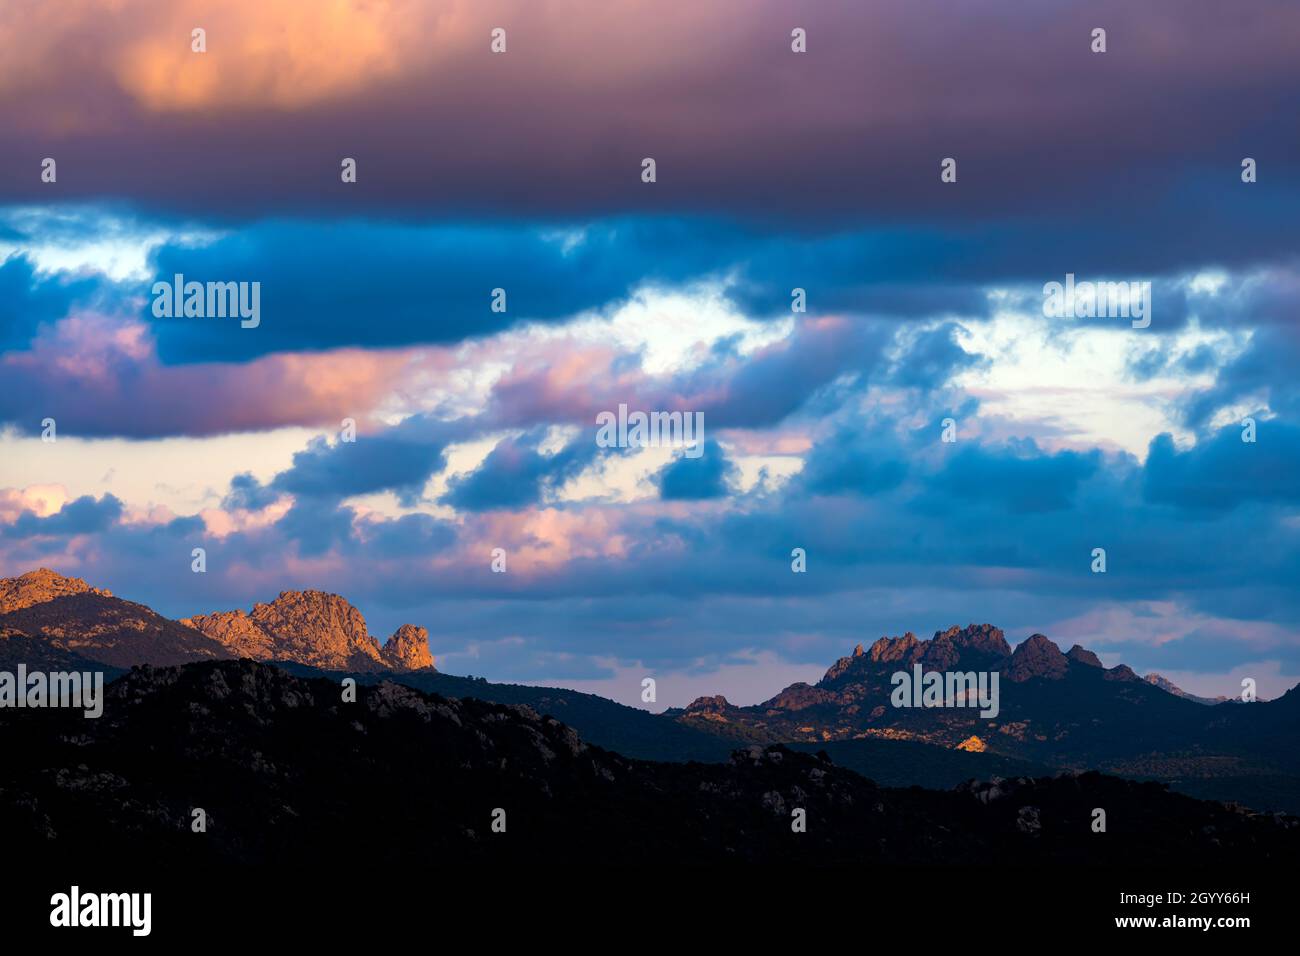 Vista mozzafiato della silhouette di una catena montuosa durante un'alba mozzafiato e nuvolosa. San Pantaleo, Sardegna, Italia. Foto Stock